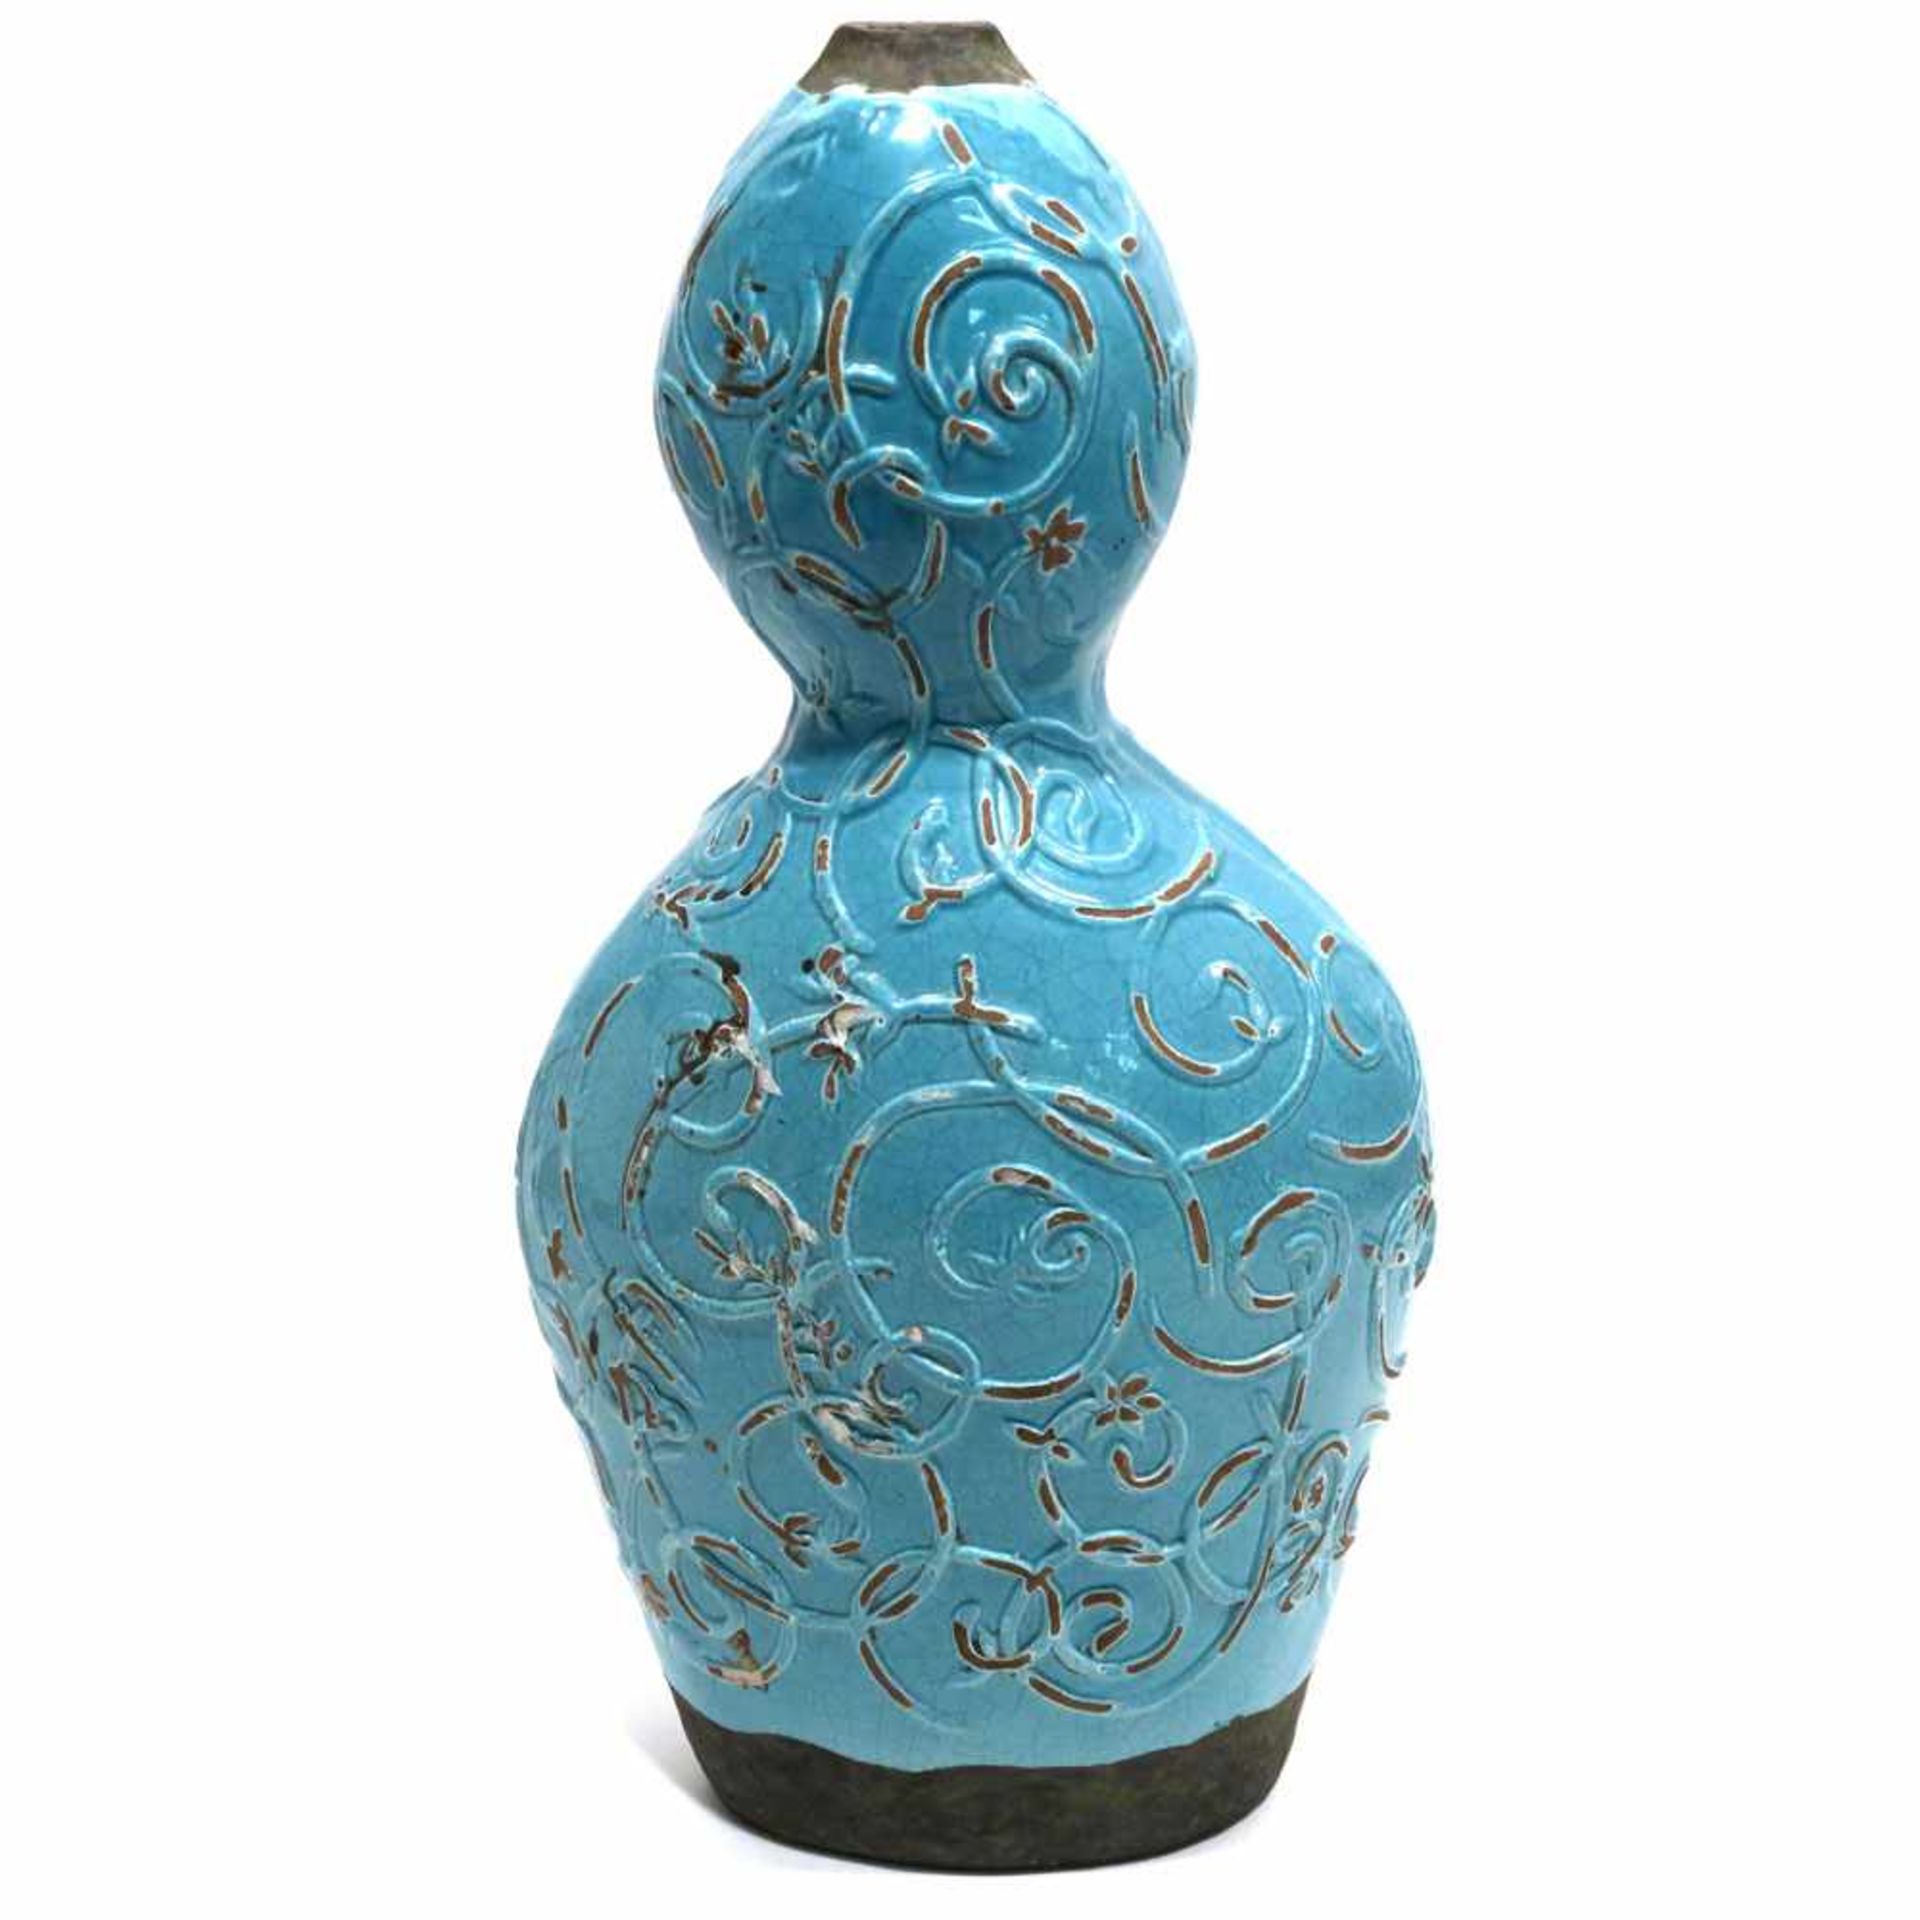 VaseWohl China. Keramik, türkisfarben glasiert. In Form eines gedrückten Doppelkürbis mit